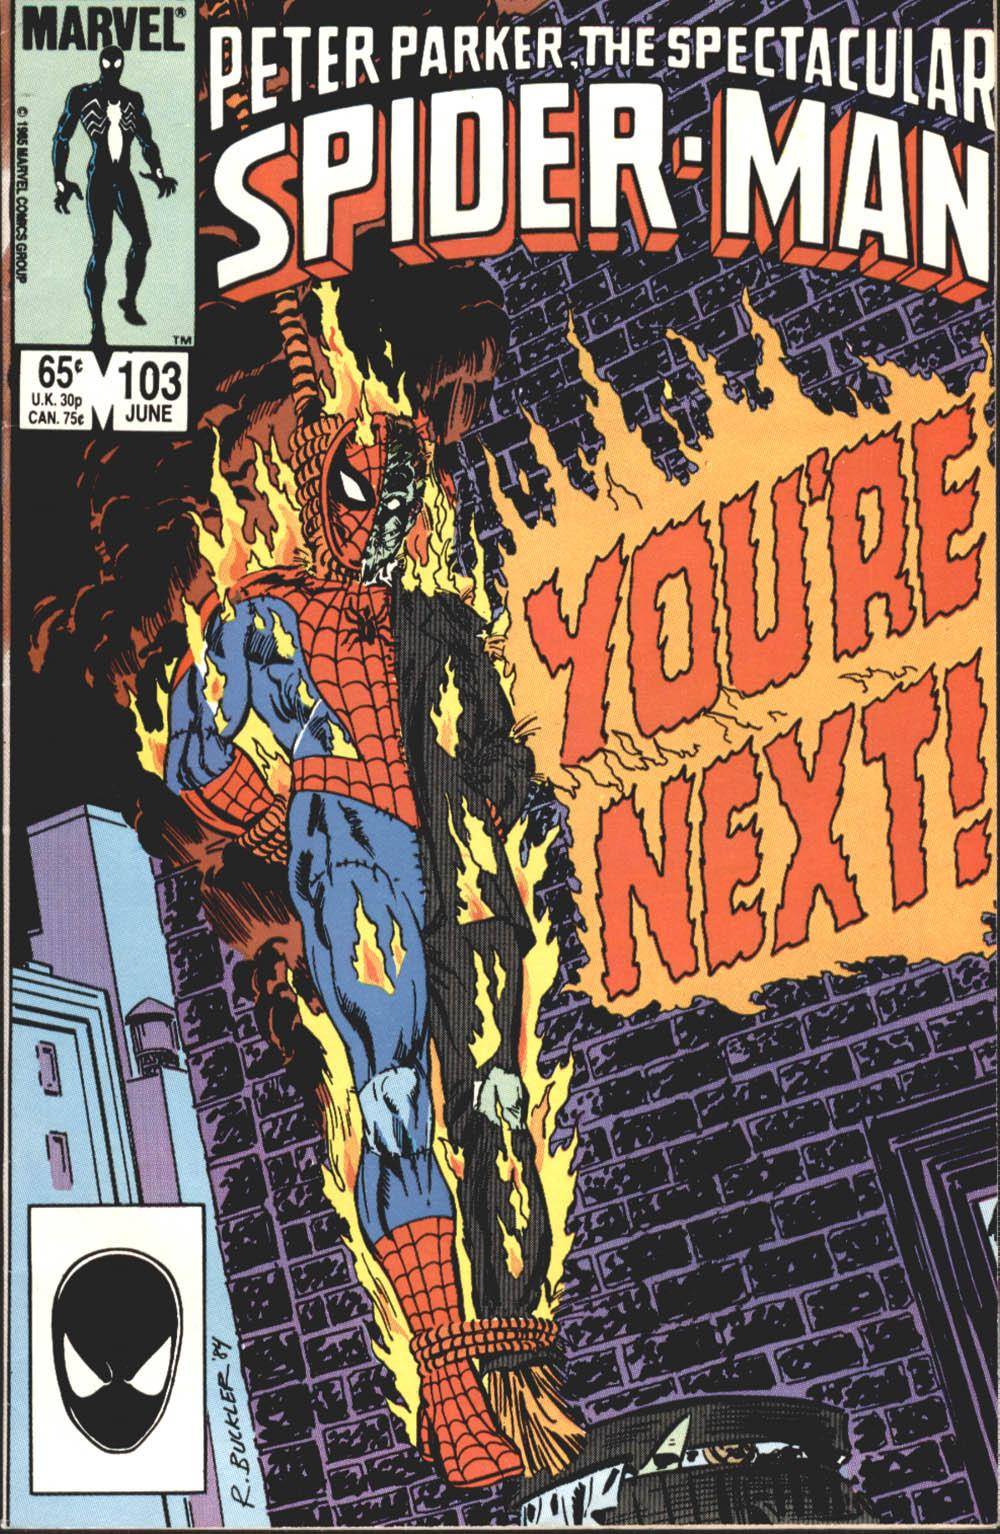 For PostalPops Peter Parker The Spectacular Spider-Man v1 103 cbr